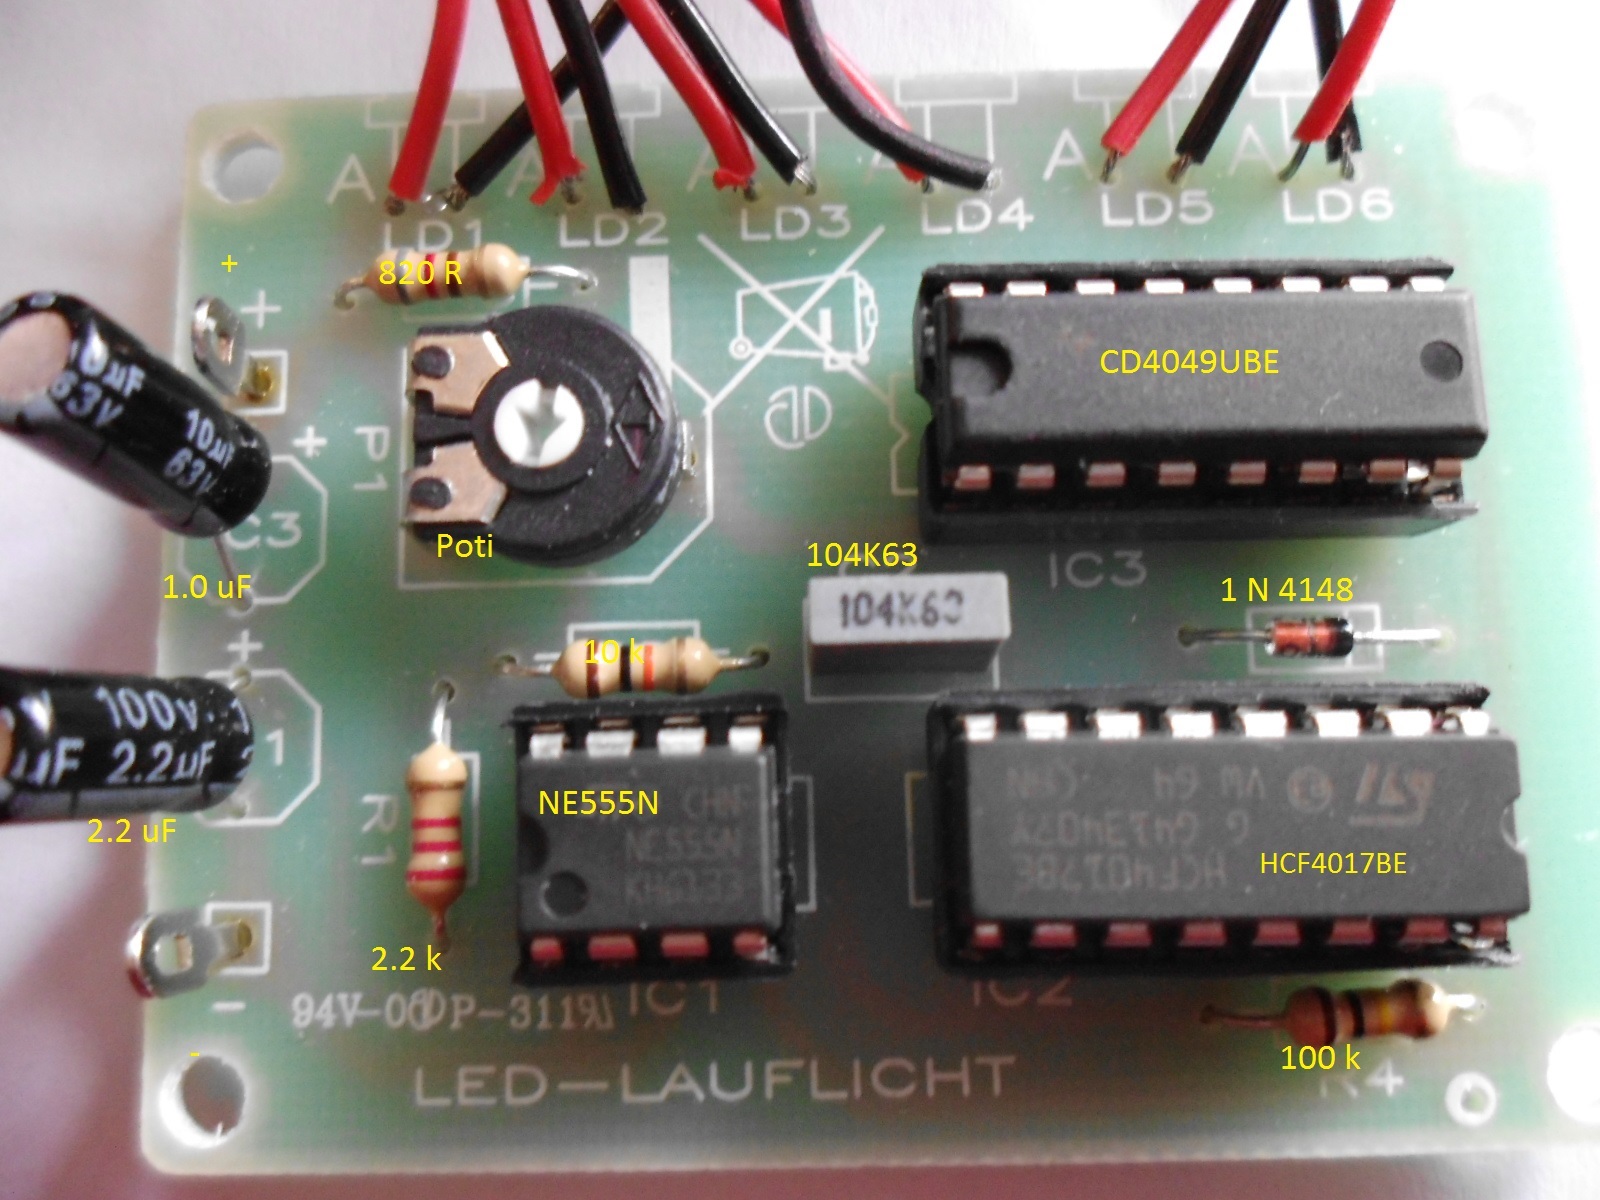 6 Kanal LED Lauflicht Läuft nicht - Mikrocontroller.net